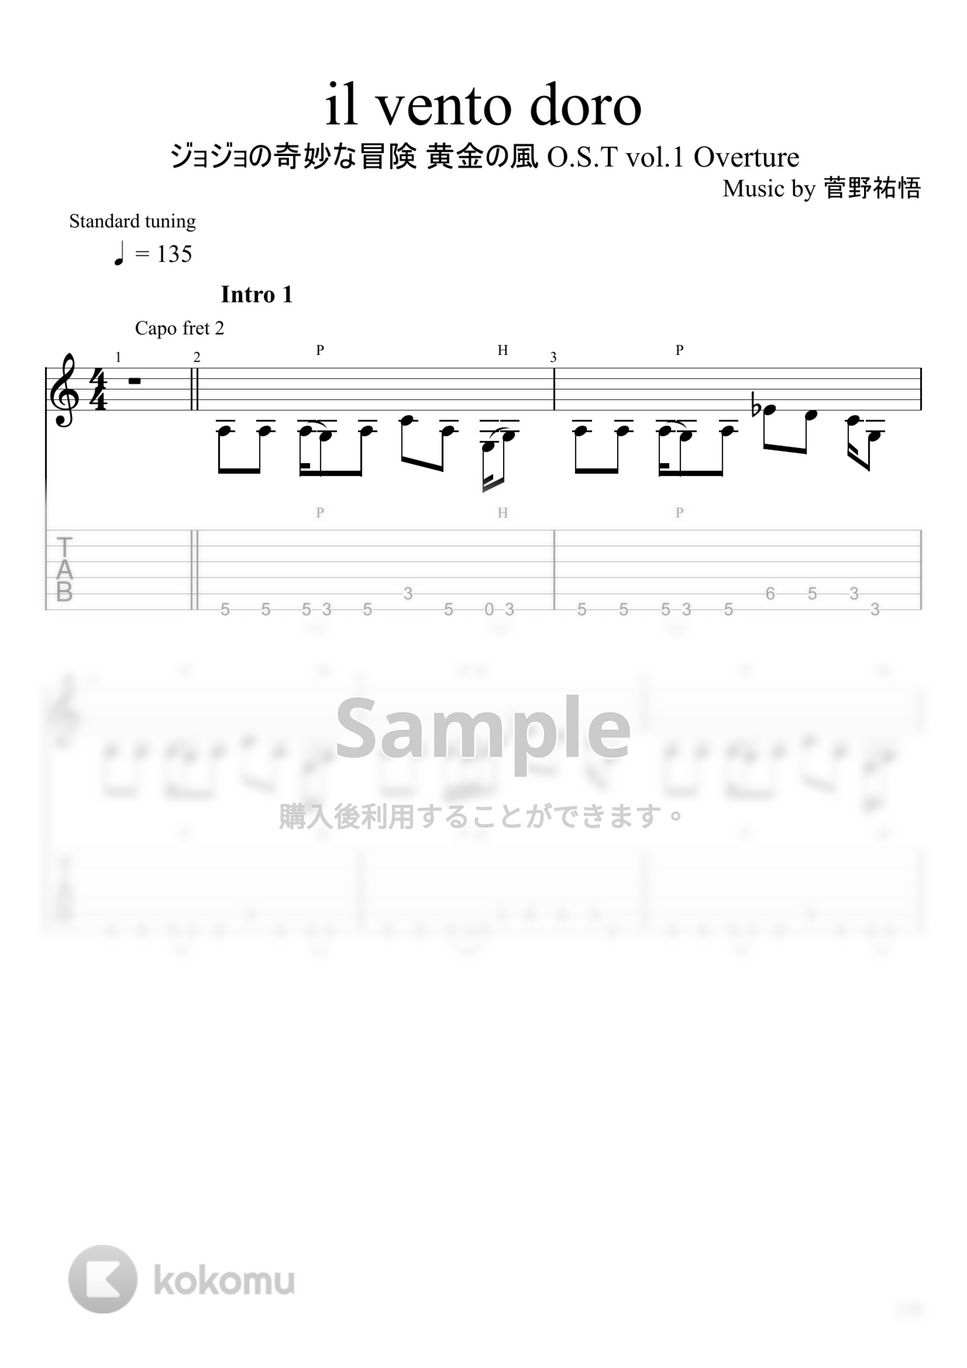 菅野祐悟 - il vento doro (ソロギター) by u3danchou